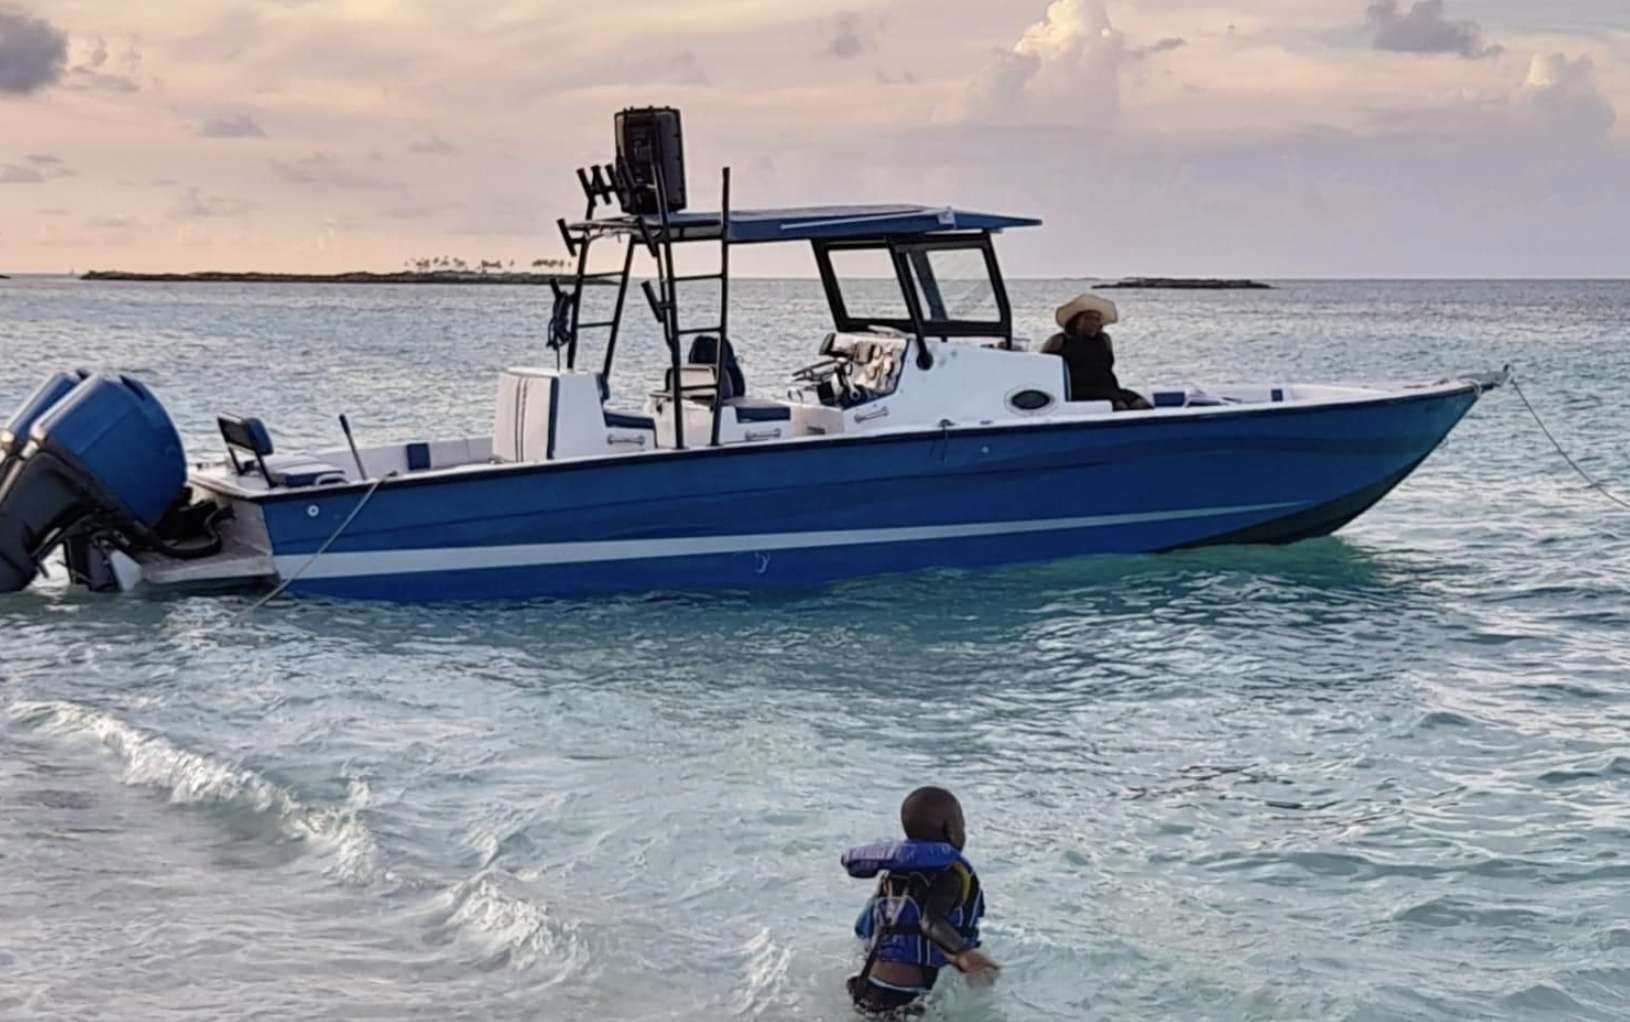 Centerconsole - Luxury yacht charter Bahamas & Boat hire in Bahamas Exumas Staniel Cay Staniel Cay Yacht Club 1